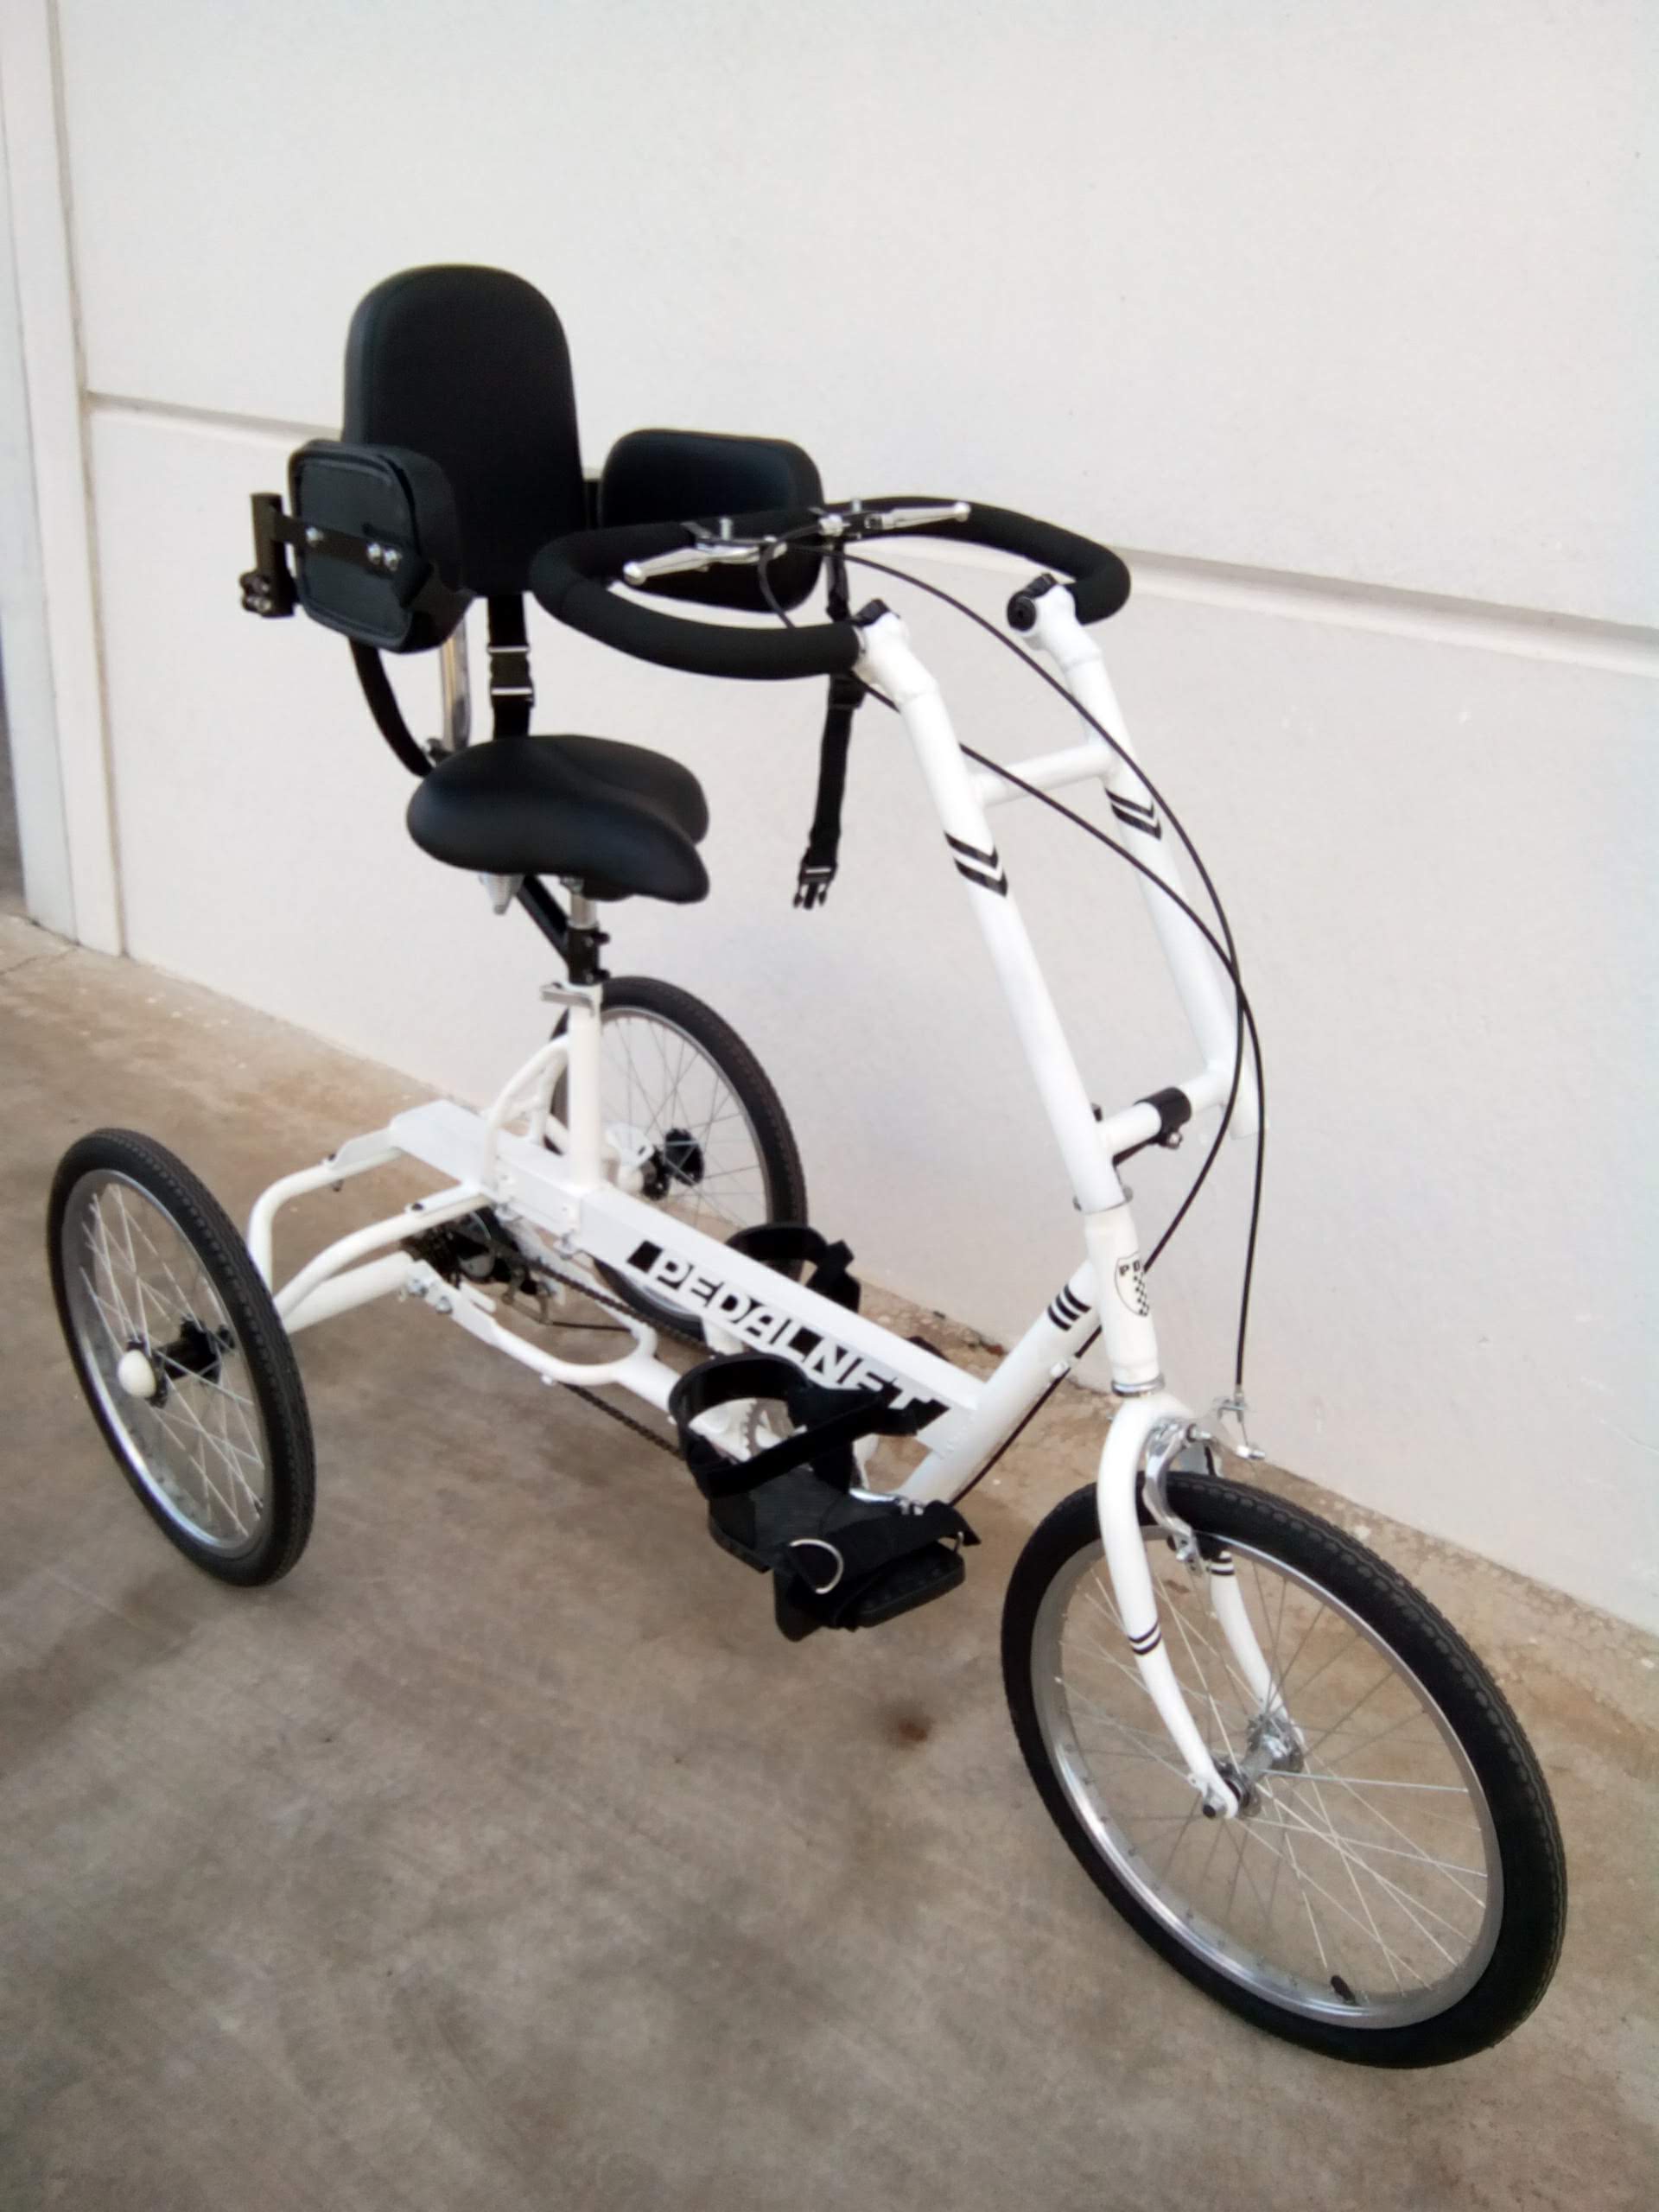 Detalle manillar especial triciclo adaptado junior, bicicleta adaptada para niños con necesidades especiales a medida